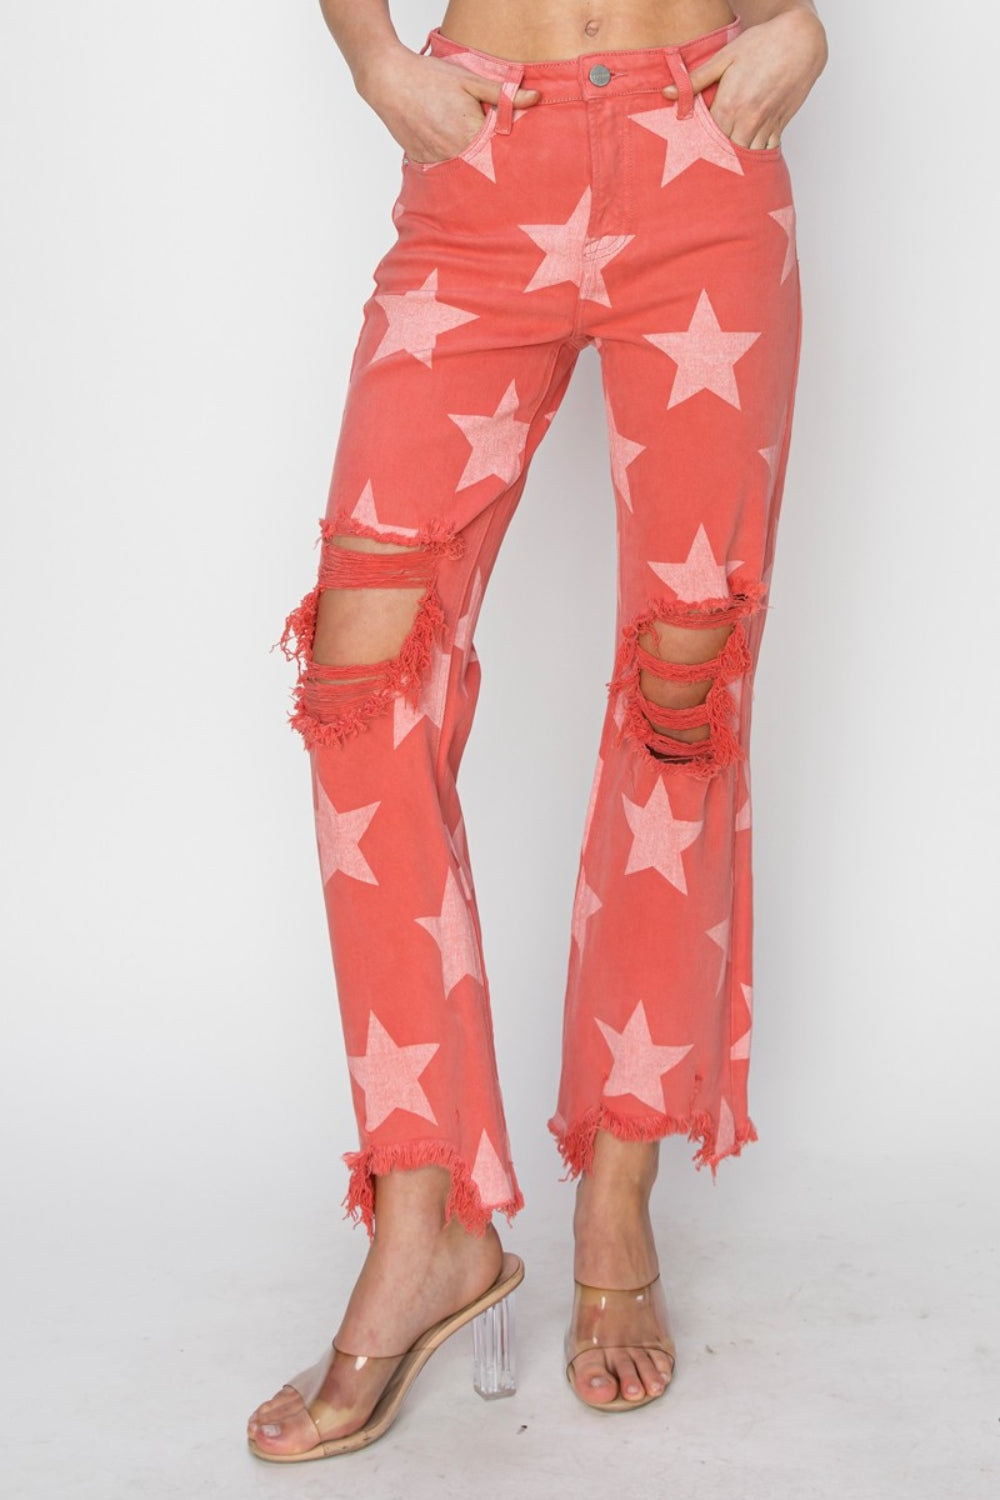 TEEK - Peach Blossom Distressed Raw Hem Star Pattern Jeans JEANS TEEK Trend   